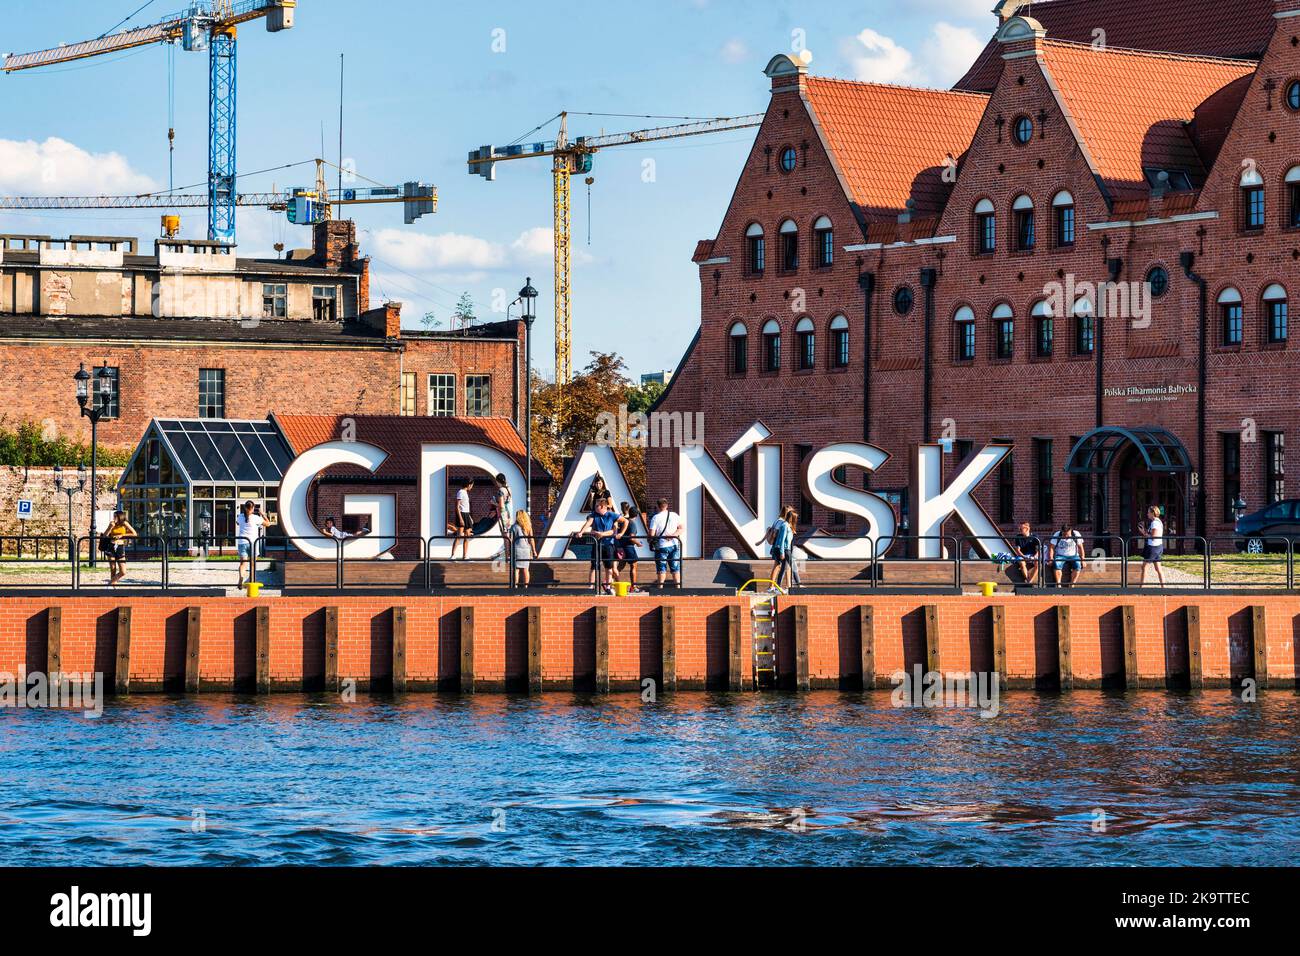 Señal de la ciudad de Gdanks, Gdansk. Polonia Foto de stock